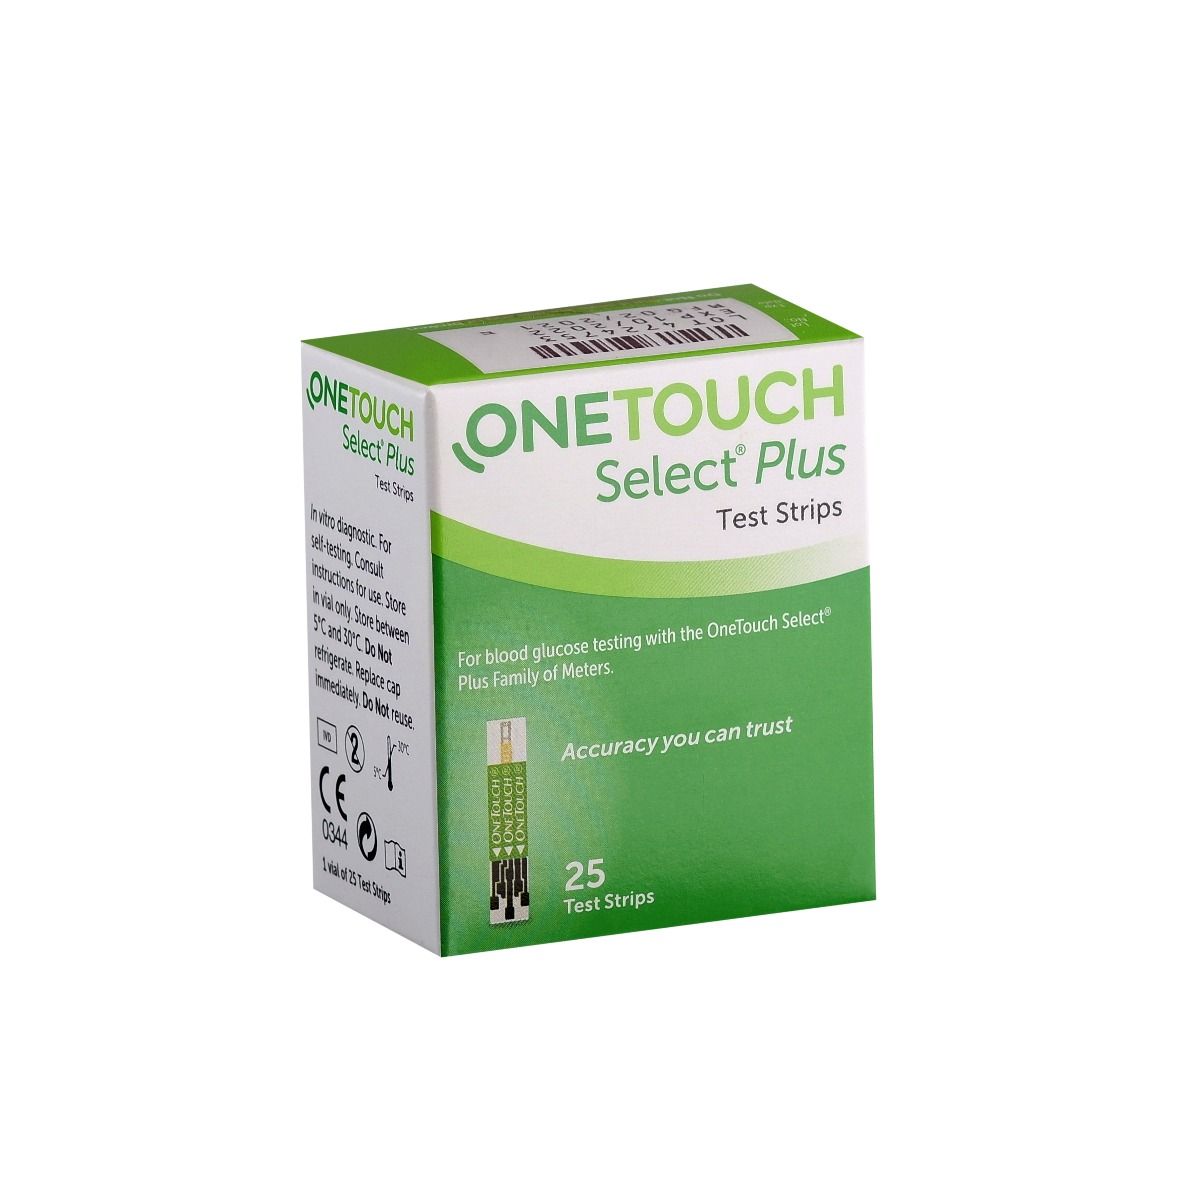 One touch select 100 тест полосок. Тест полоски для определения сахара в крови ONETOUCH select Plus №100.